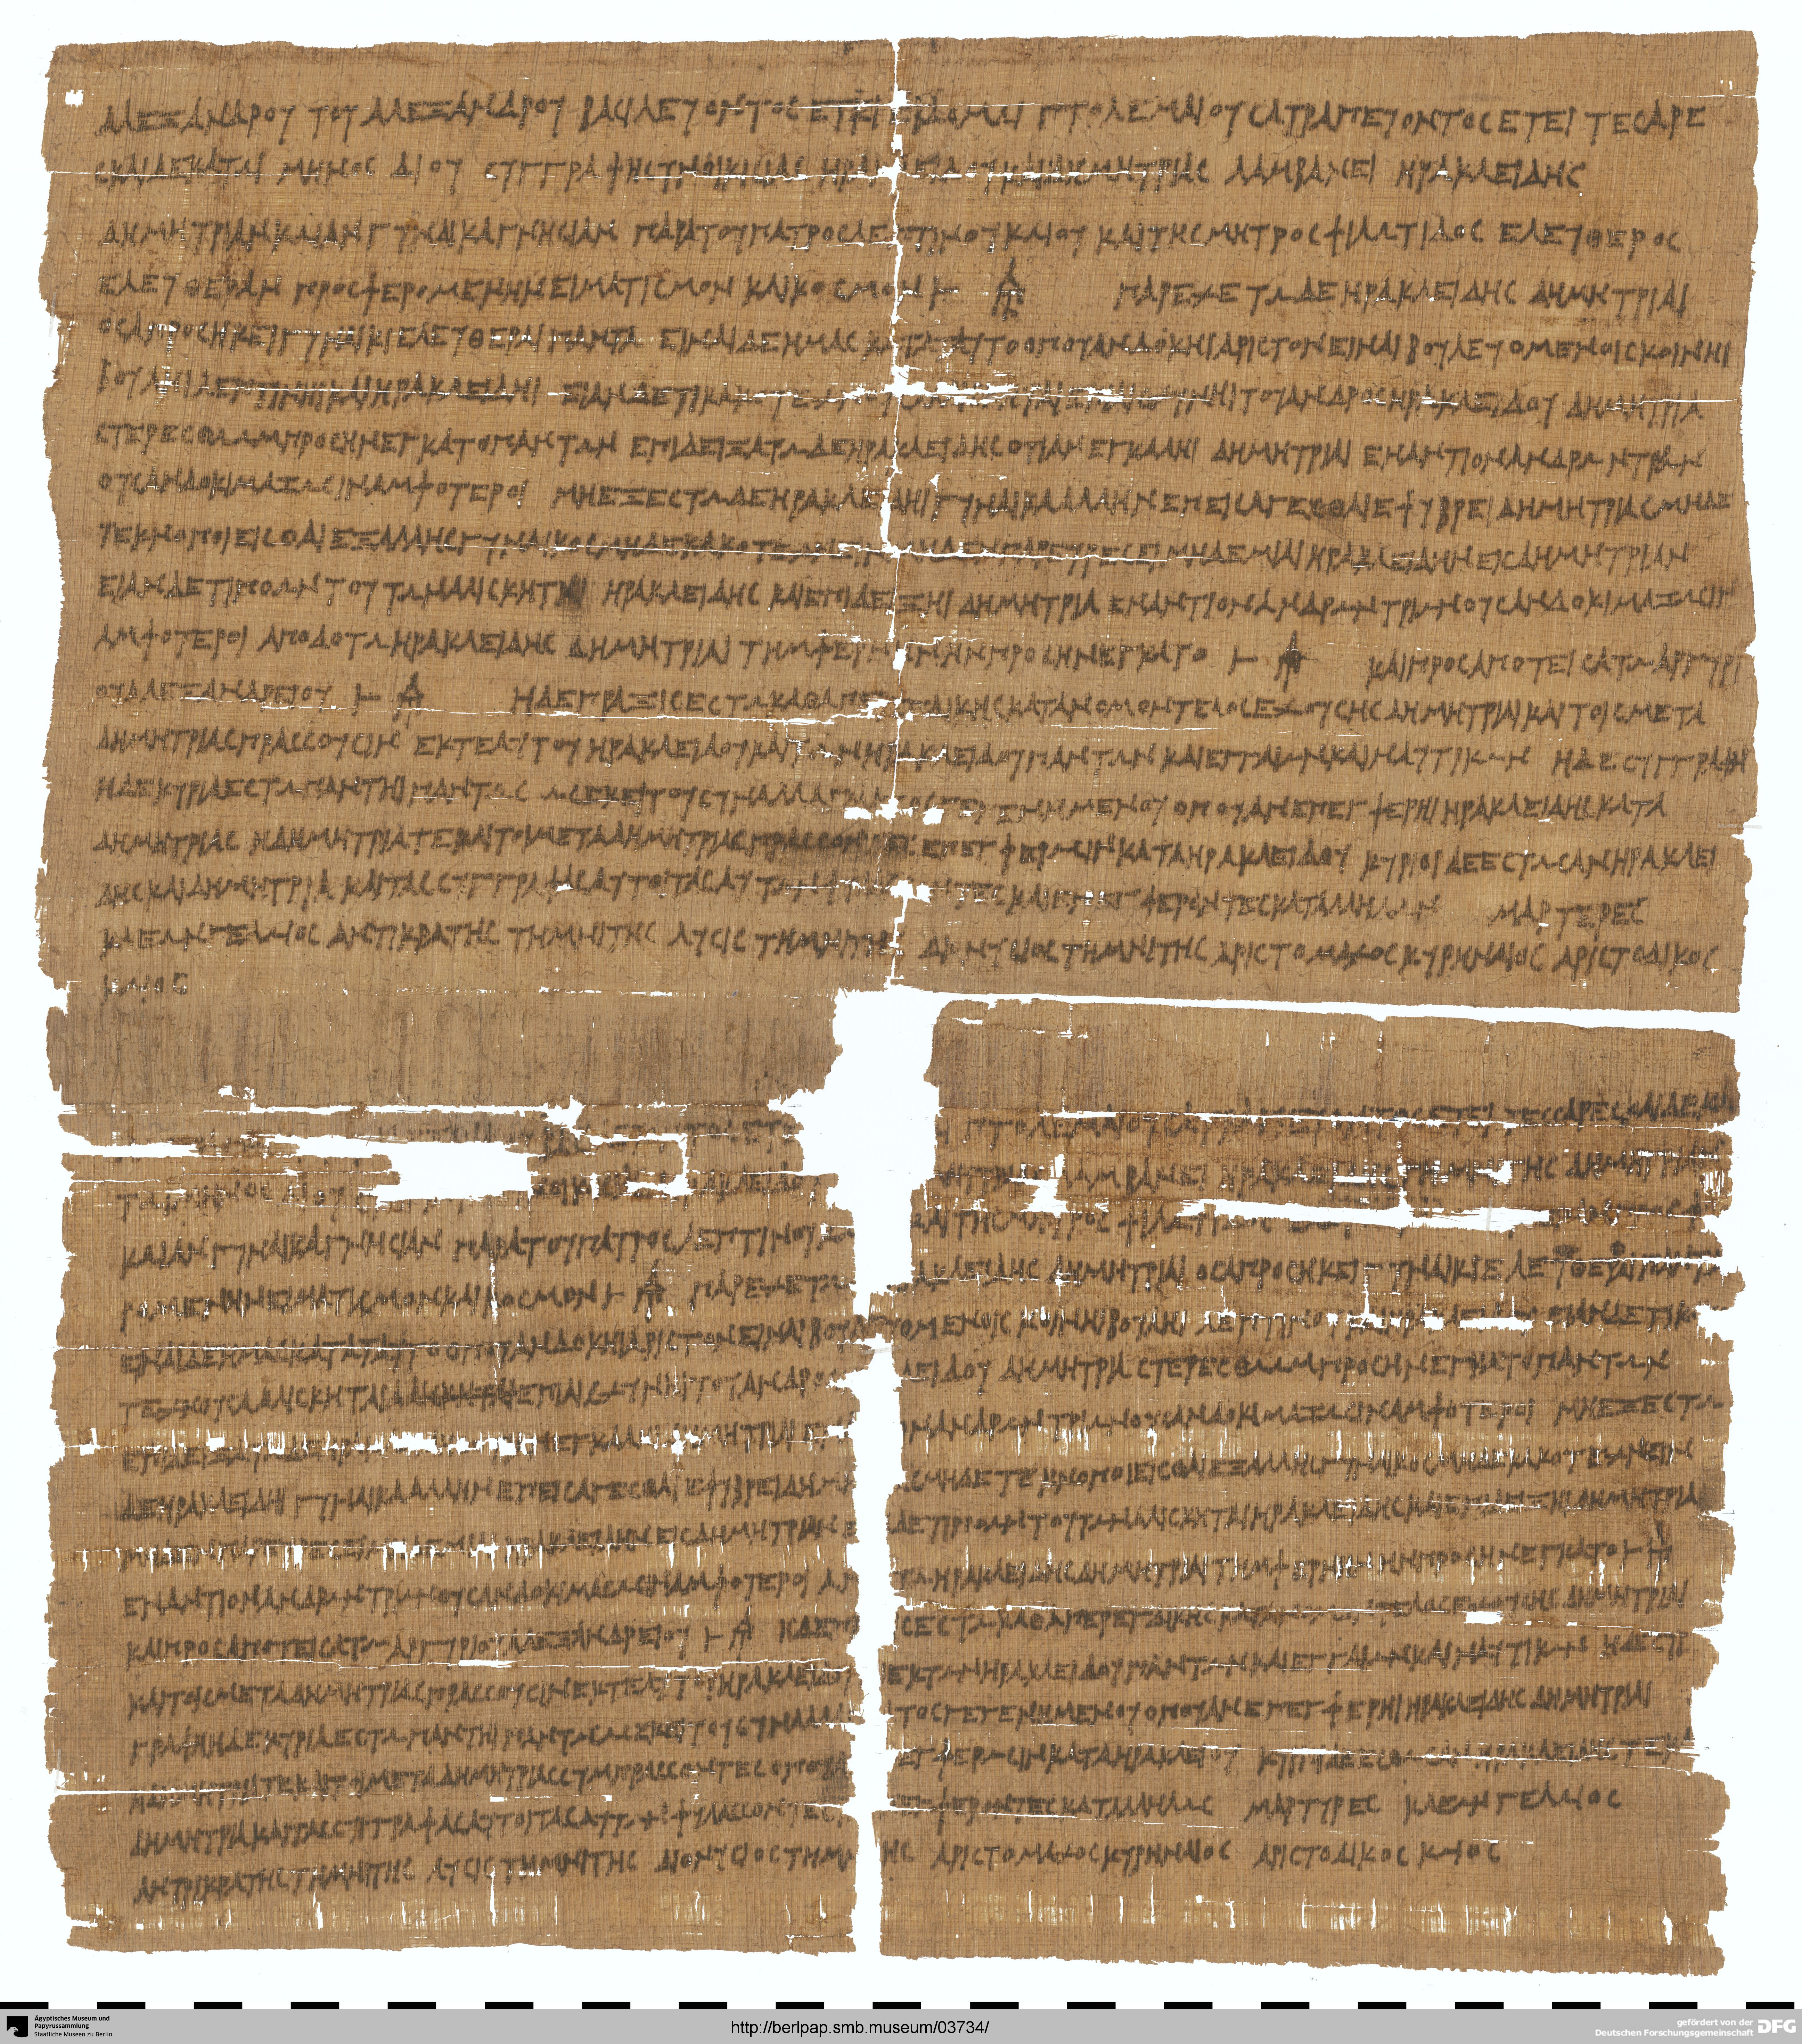 http://berlpap.smb.museum/Original/P_13500_R_001.jpg (Ägyptisches Museum und Papyrussammlung, Staatliche Museen zu Berlin CC BY-NC-SA)